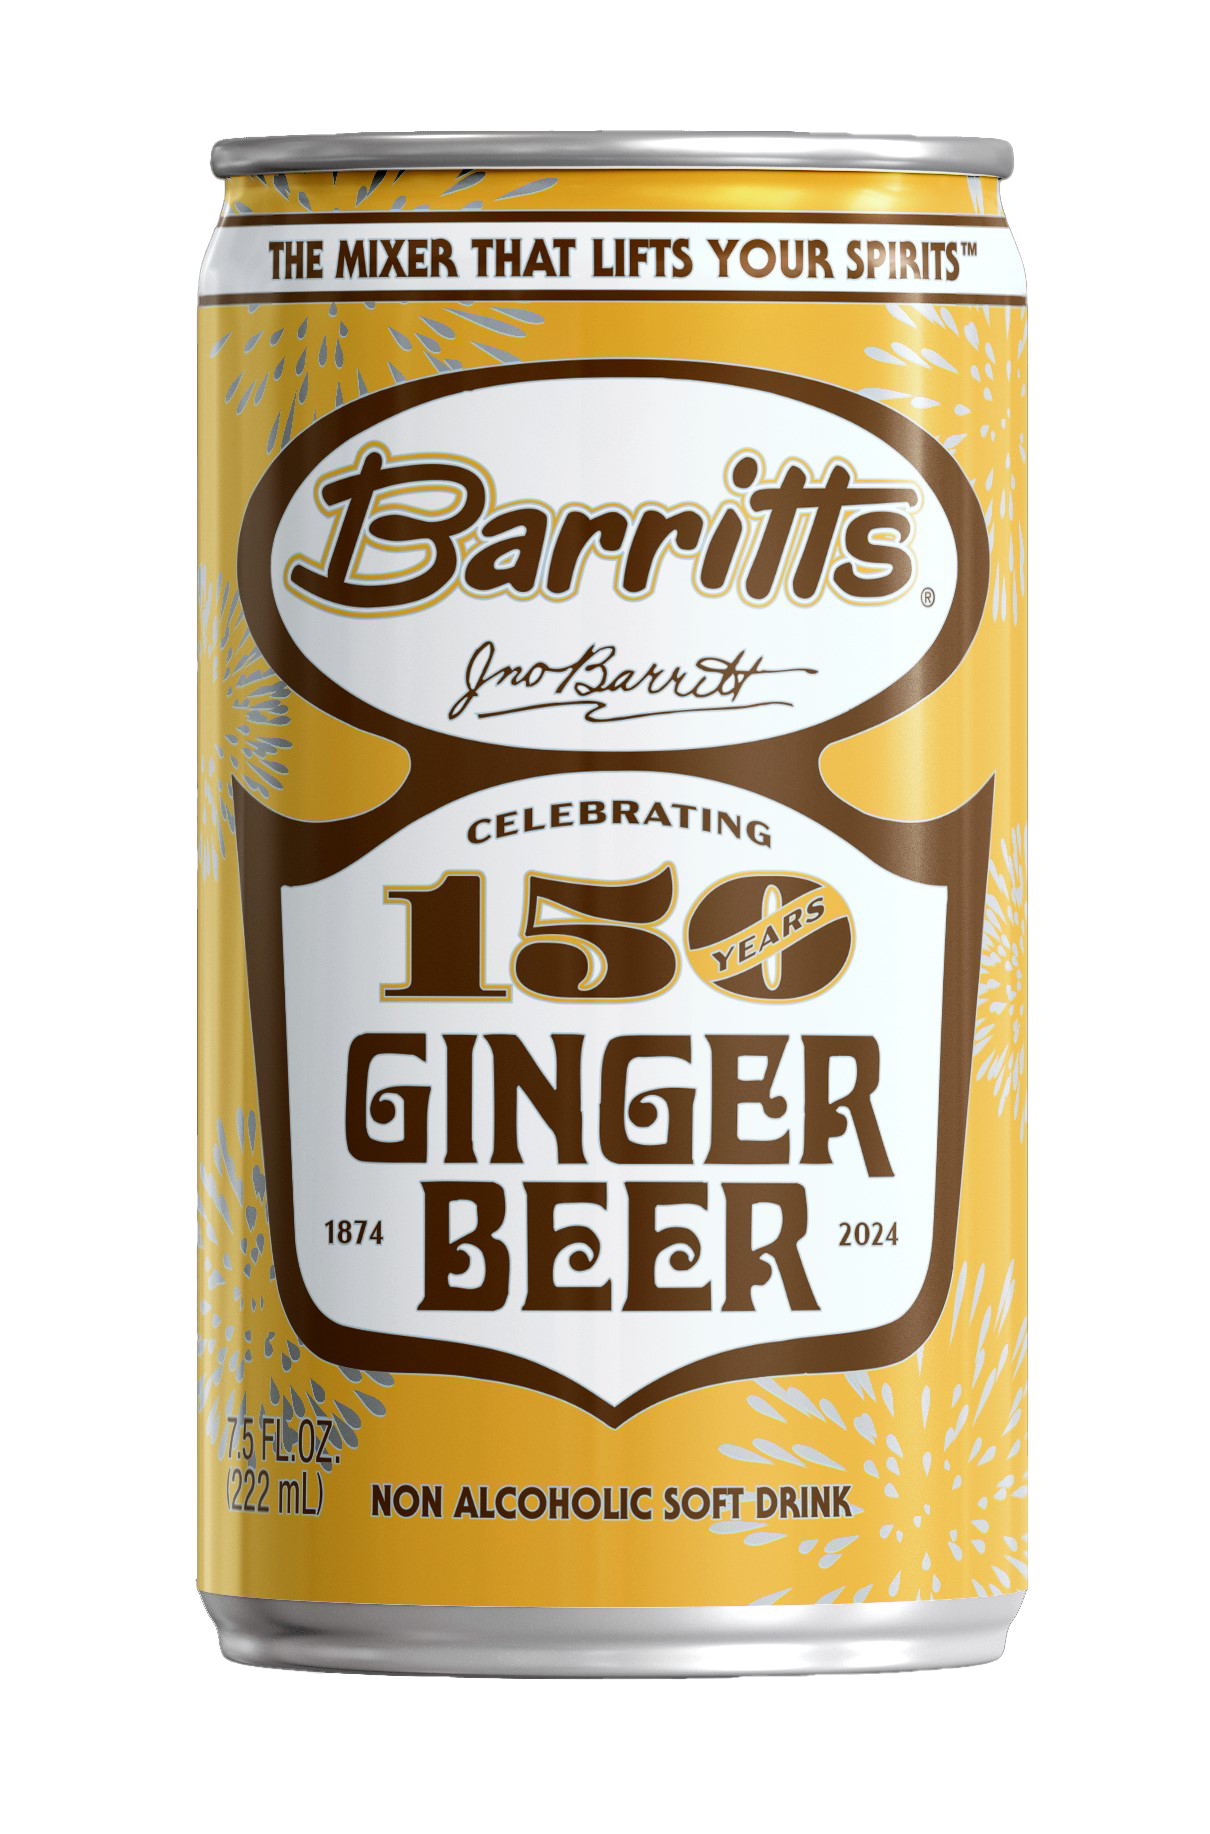 Barritt's Original Ginger Beer